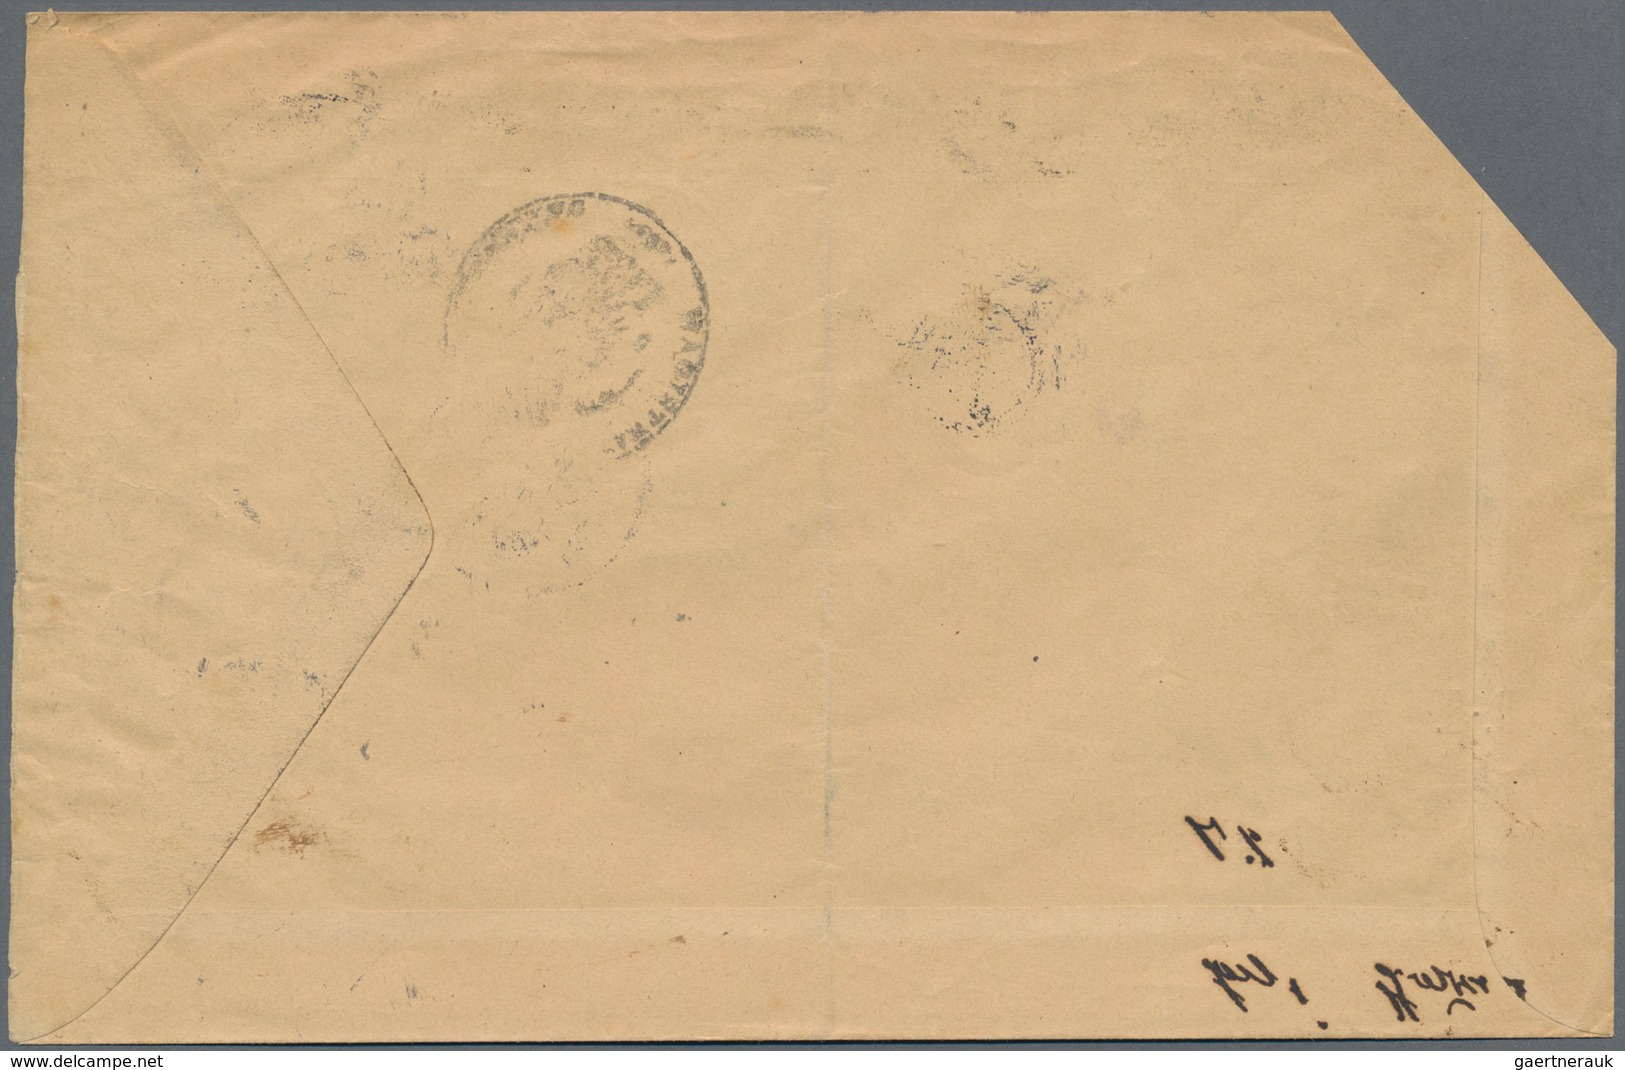 Bayern - Portomarken: 1896. Portomarke 3 Pf, Rötliches Papier Mit Echtem, Kopfstehendem Aufdruck "Vo - Autres & Non Classés